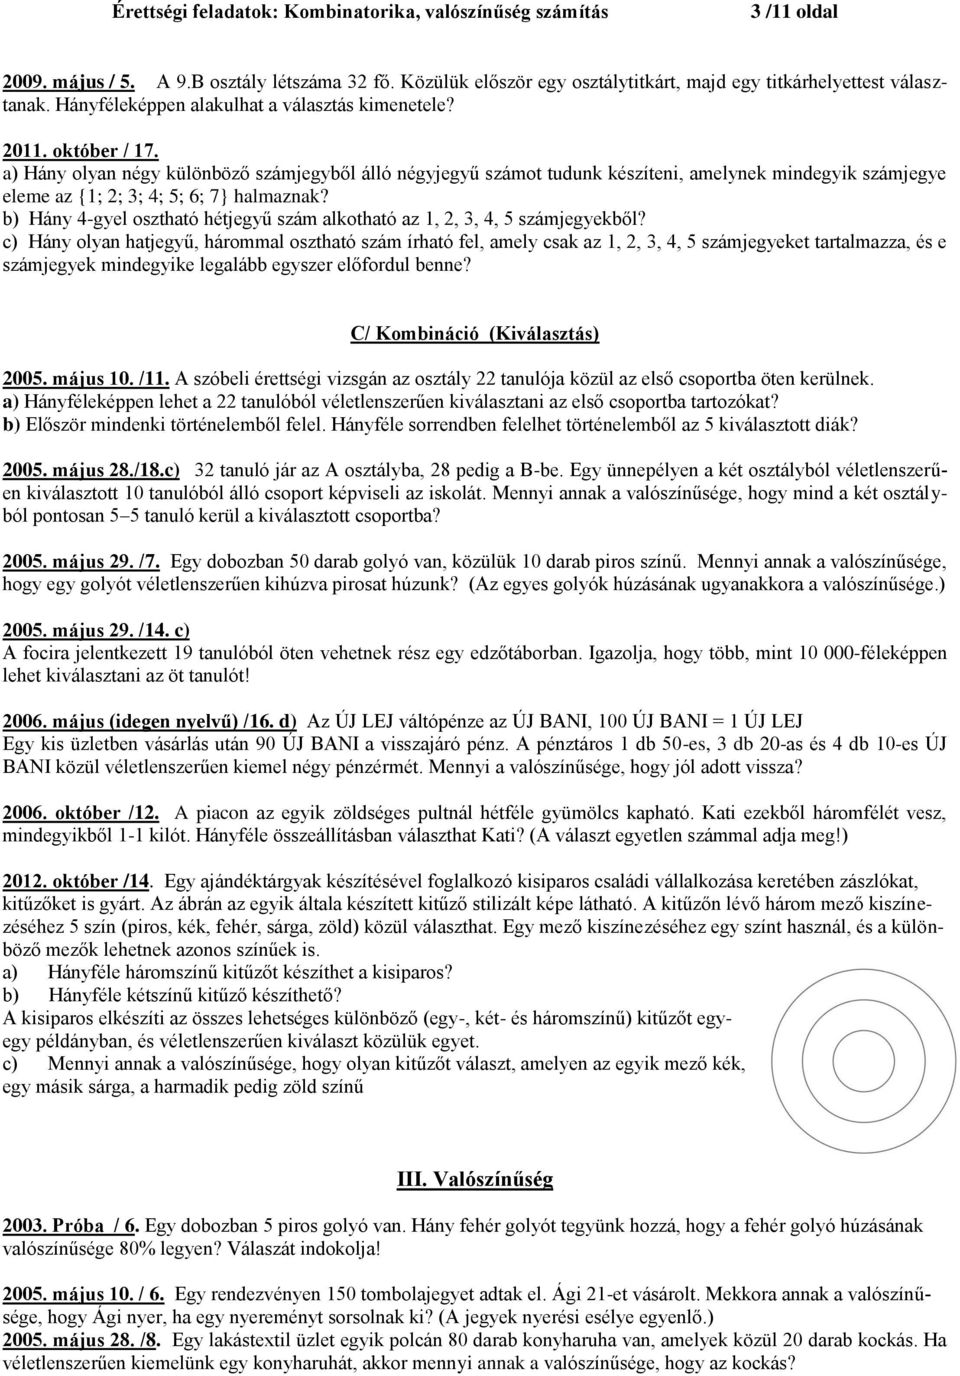 Érettségi feladatok: Kombinatorika, valószínűség számítás. I. Általános  (logika, skatulya elv stb.) - PDF Free Download